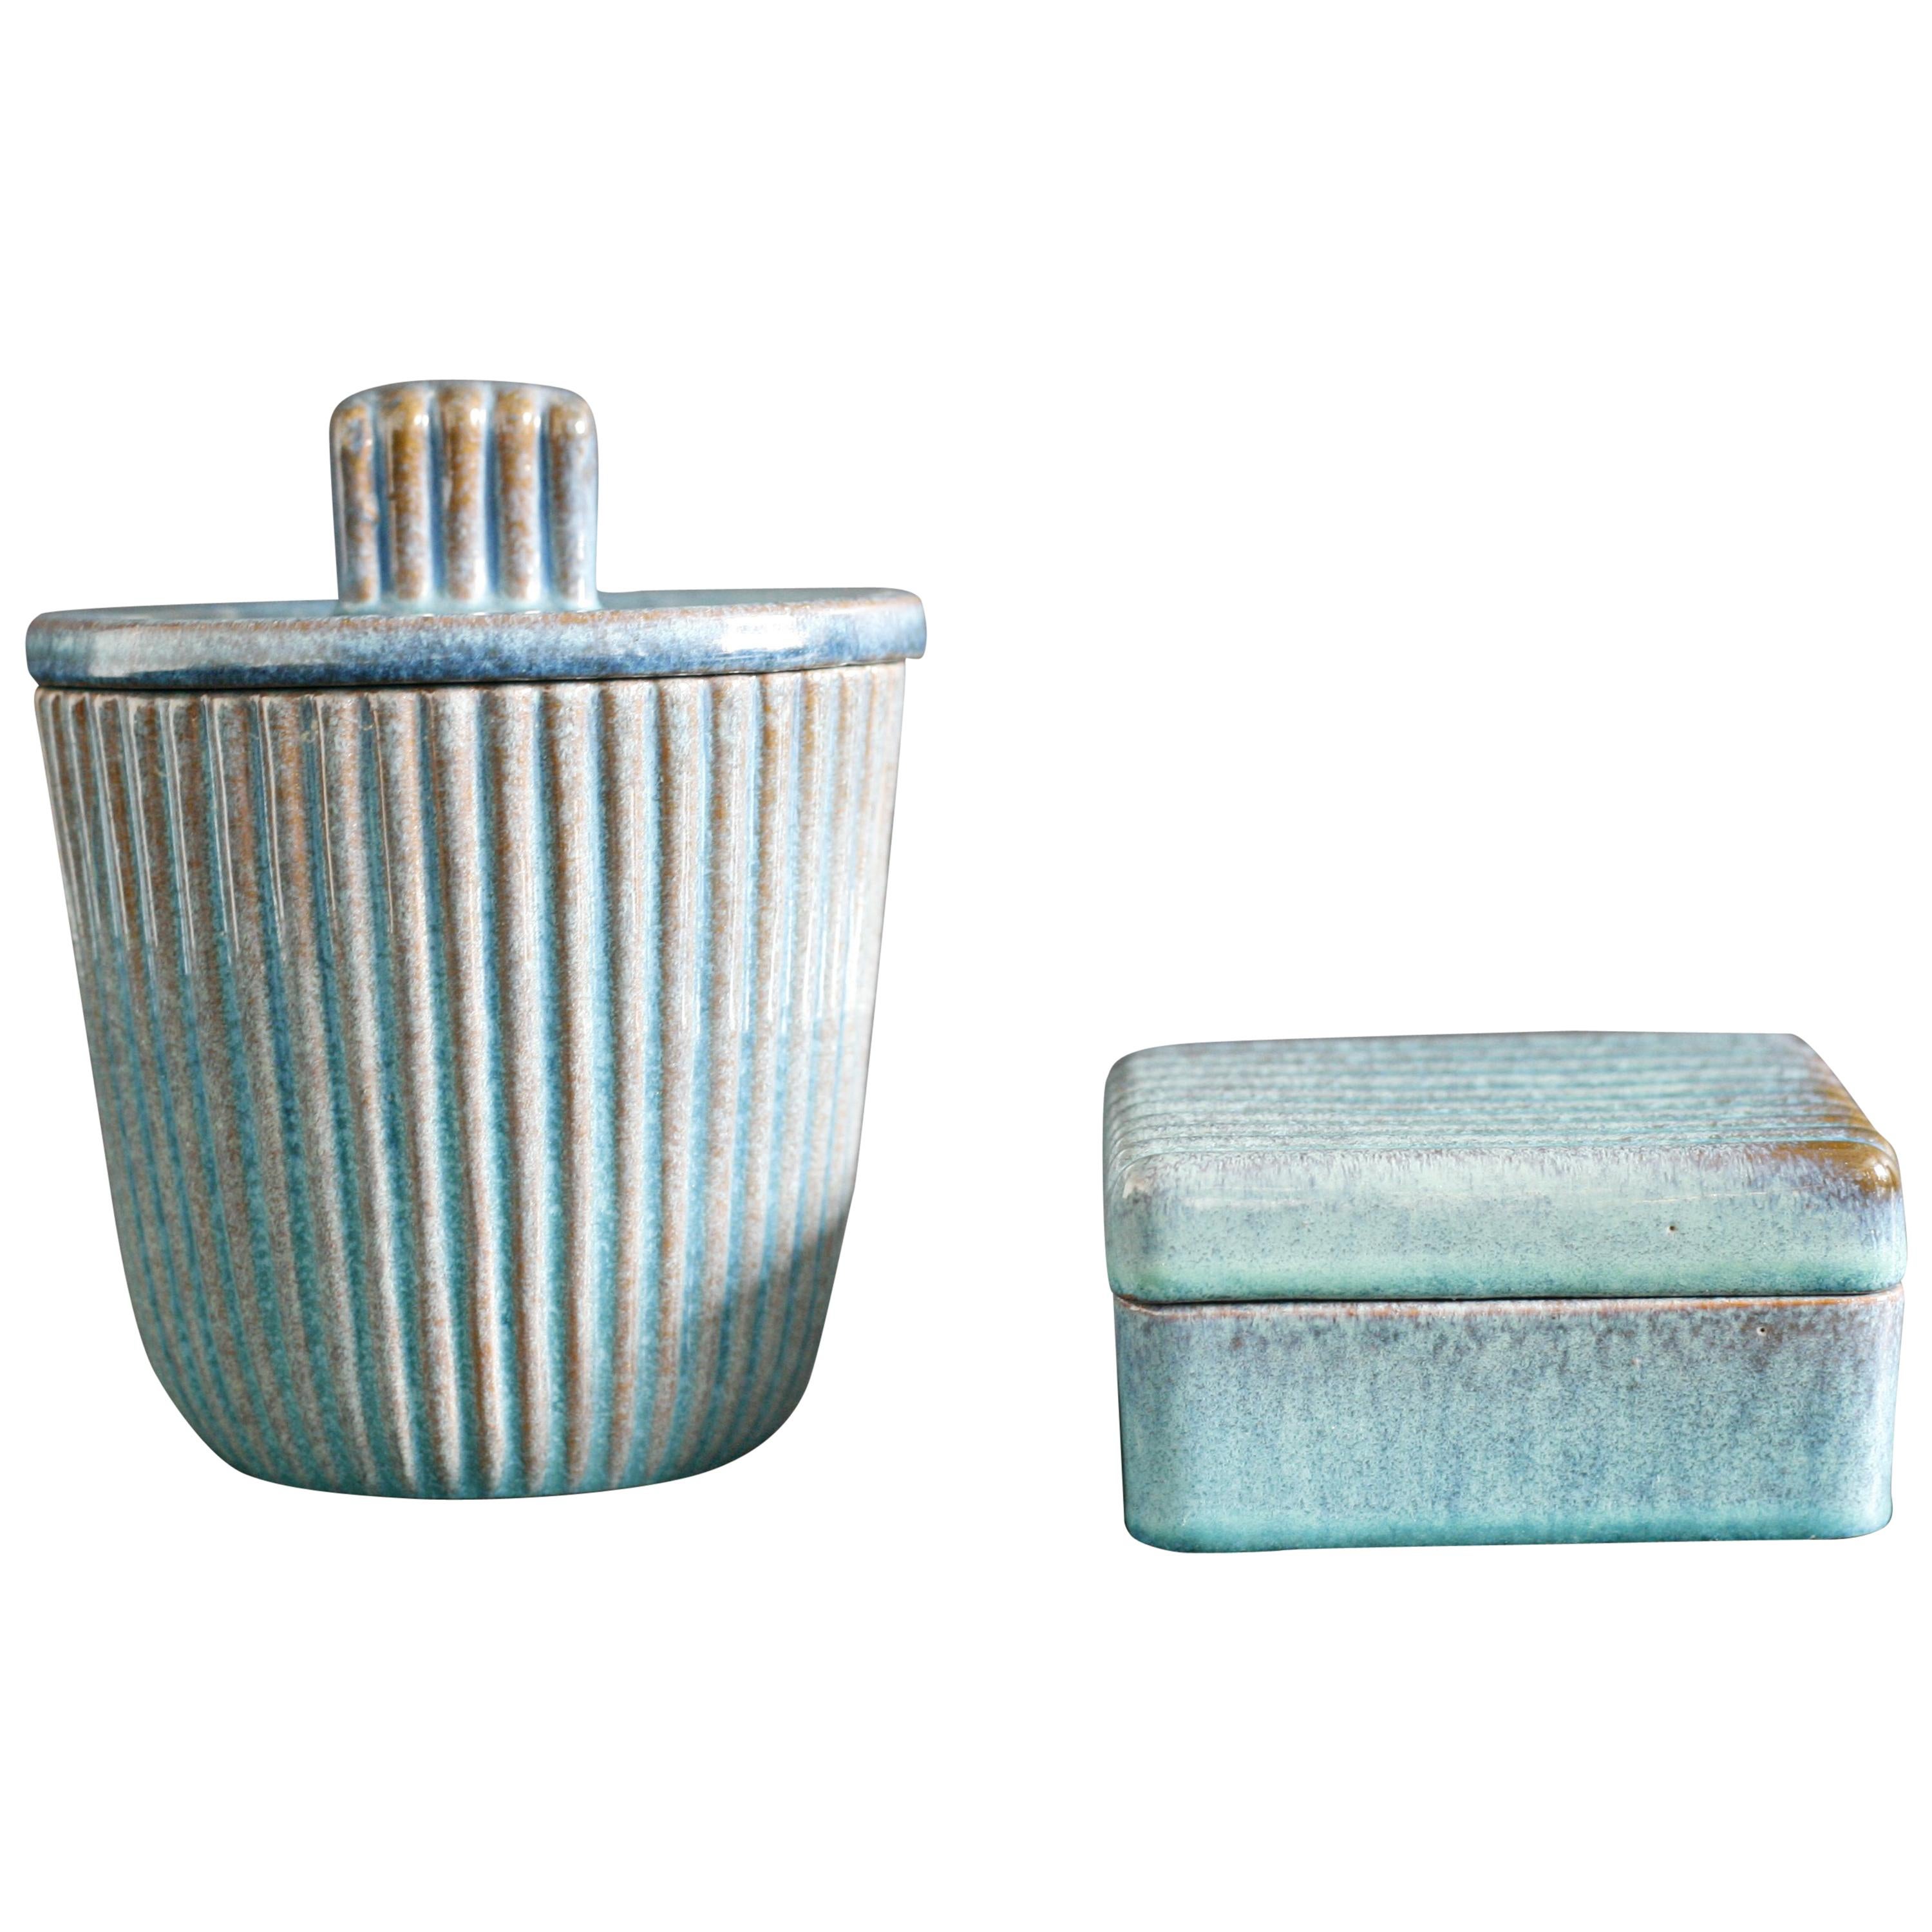 Ekeby Keramik, Schweden, 1960er Jahre Set bestehend aus einer Urne und einem Glas in einer blau/türkisen Doppelglasurschicht, die die darunter liegende Keramik zeigt, die an den Rändern durchschimmert, entworfen von Vicke lindstrand dieses Paar ist